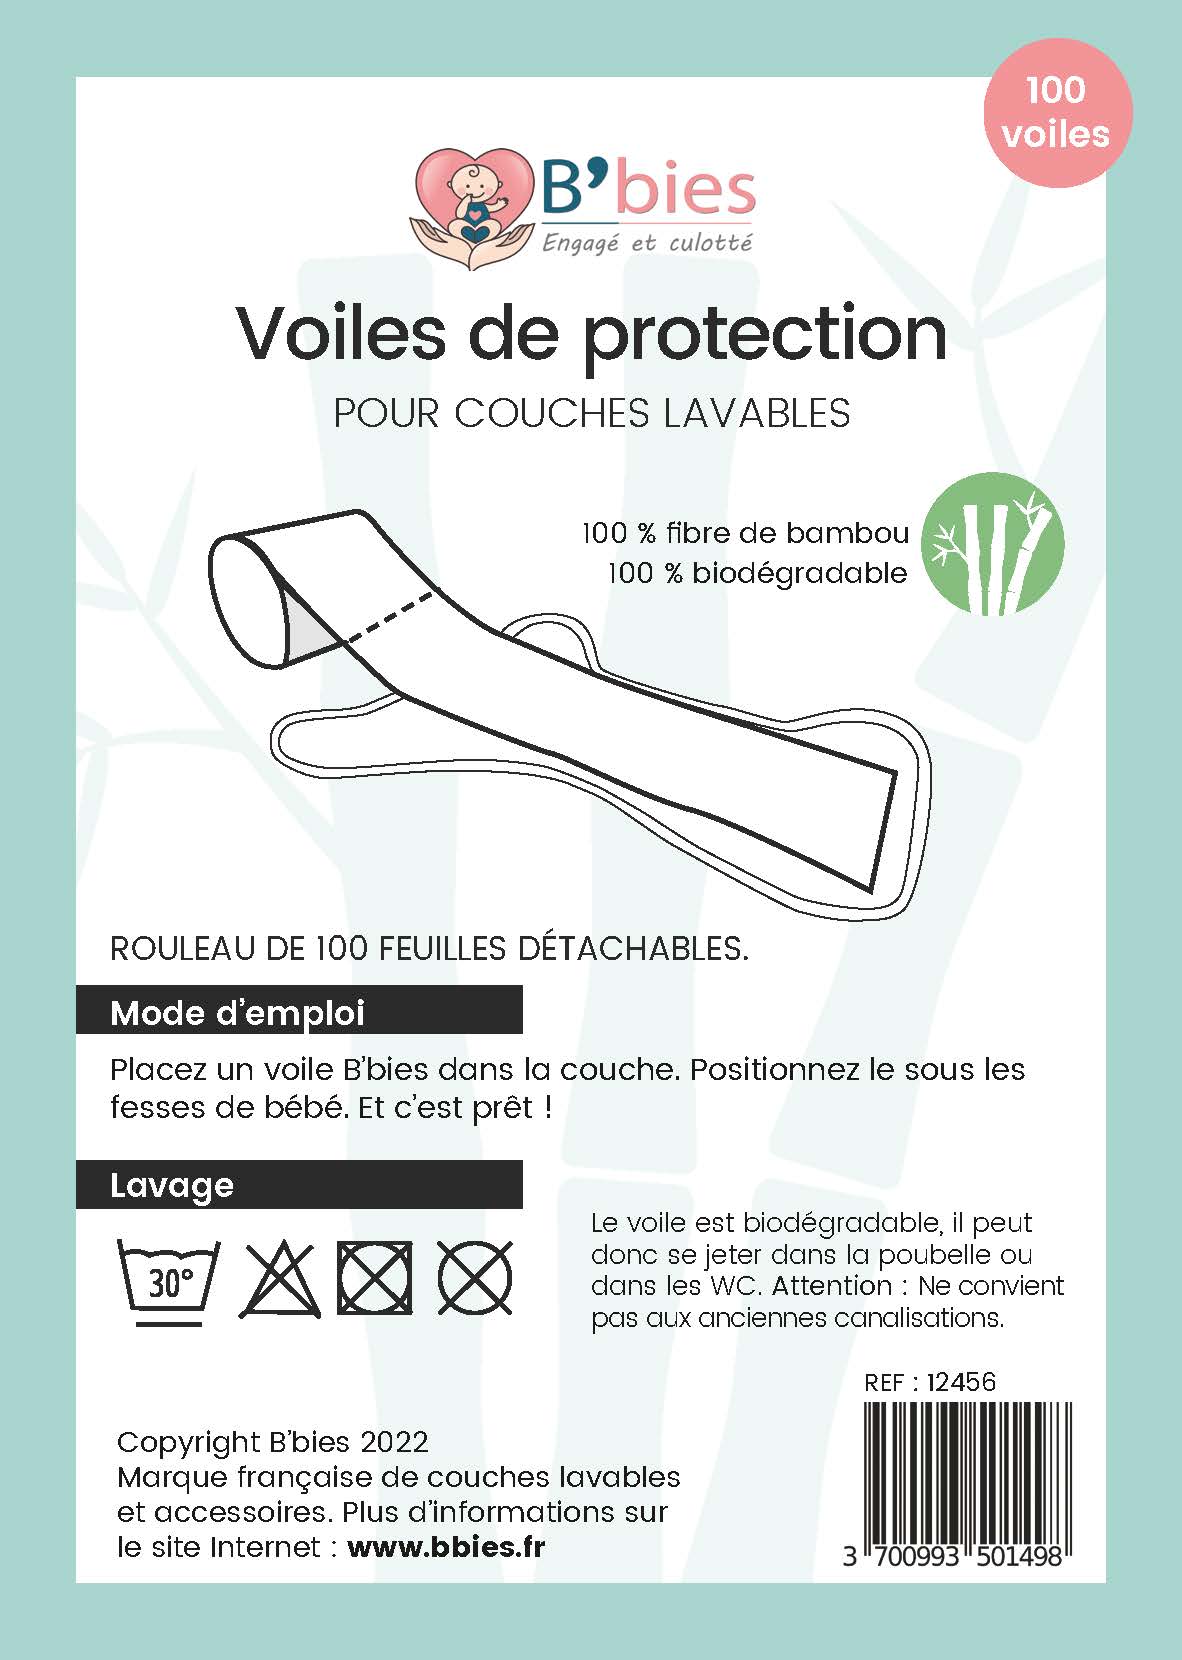 Le voile de protection pour couche lavable